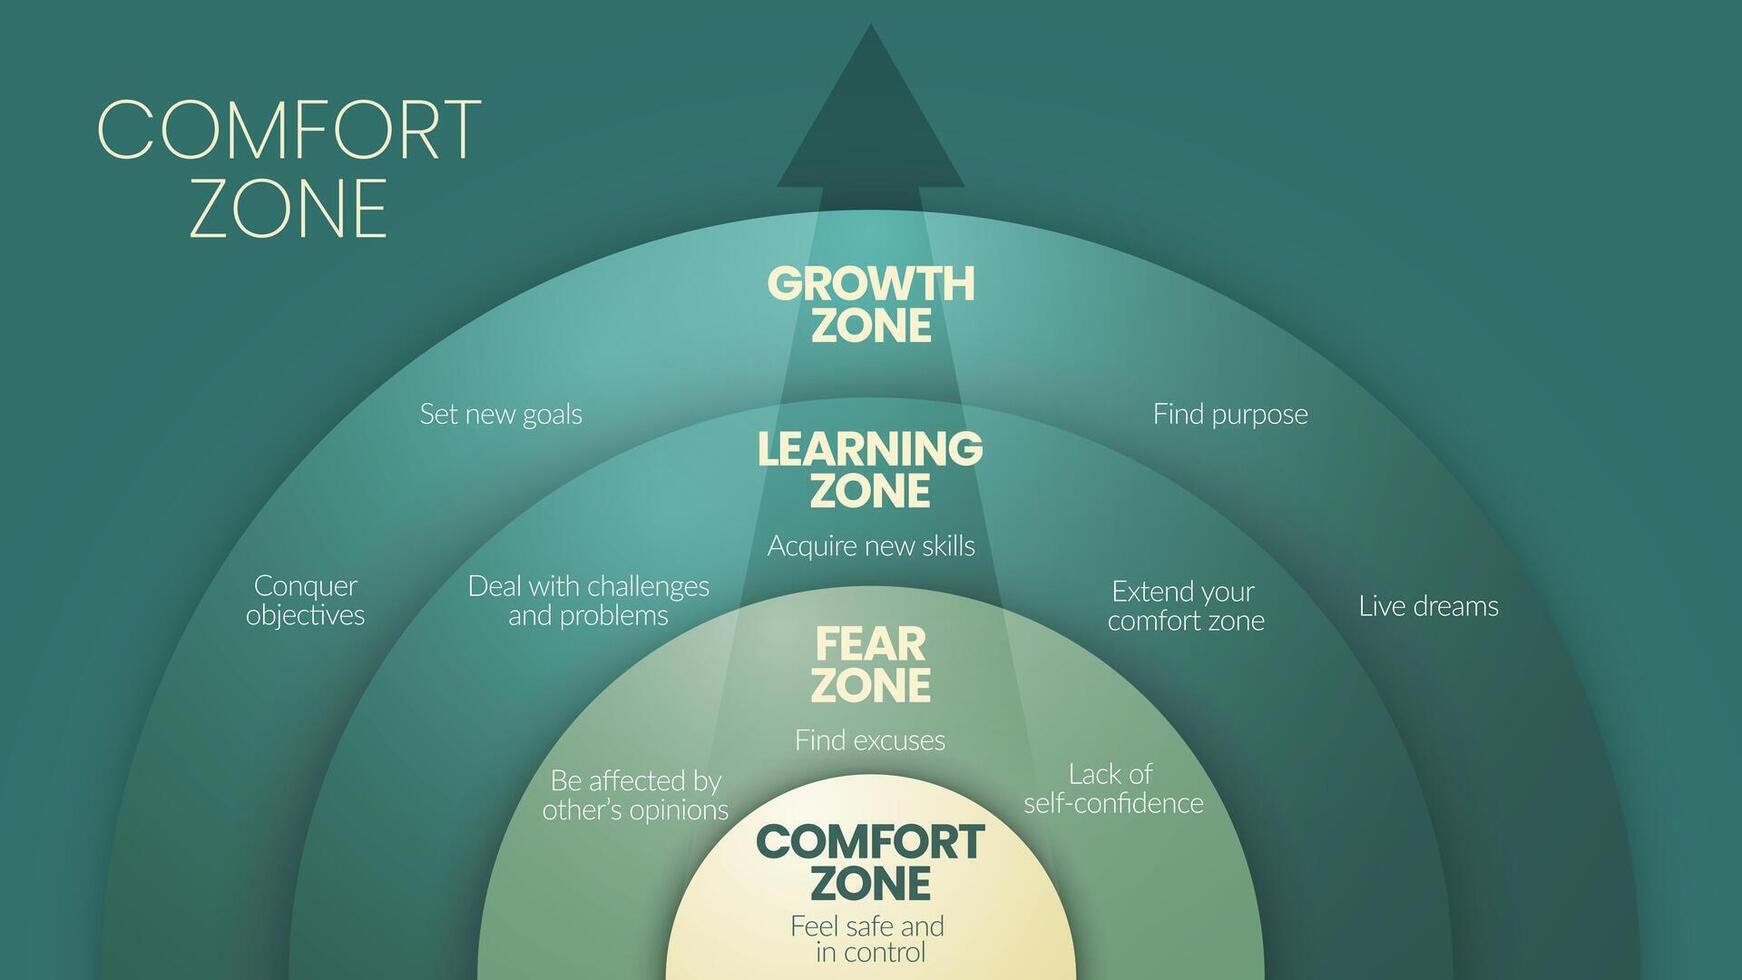 le confort zone cercle diagramme infographie modèle est une comportement modèle ou mental Etat dans lequel la personne se sent familier, a 4 les niveaux à analyser tel comme confort zone, craindre, apprentissage et croissance zone. vecteur